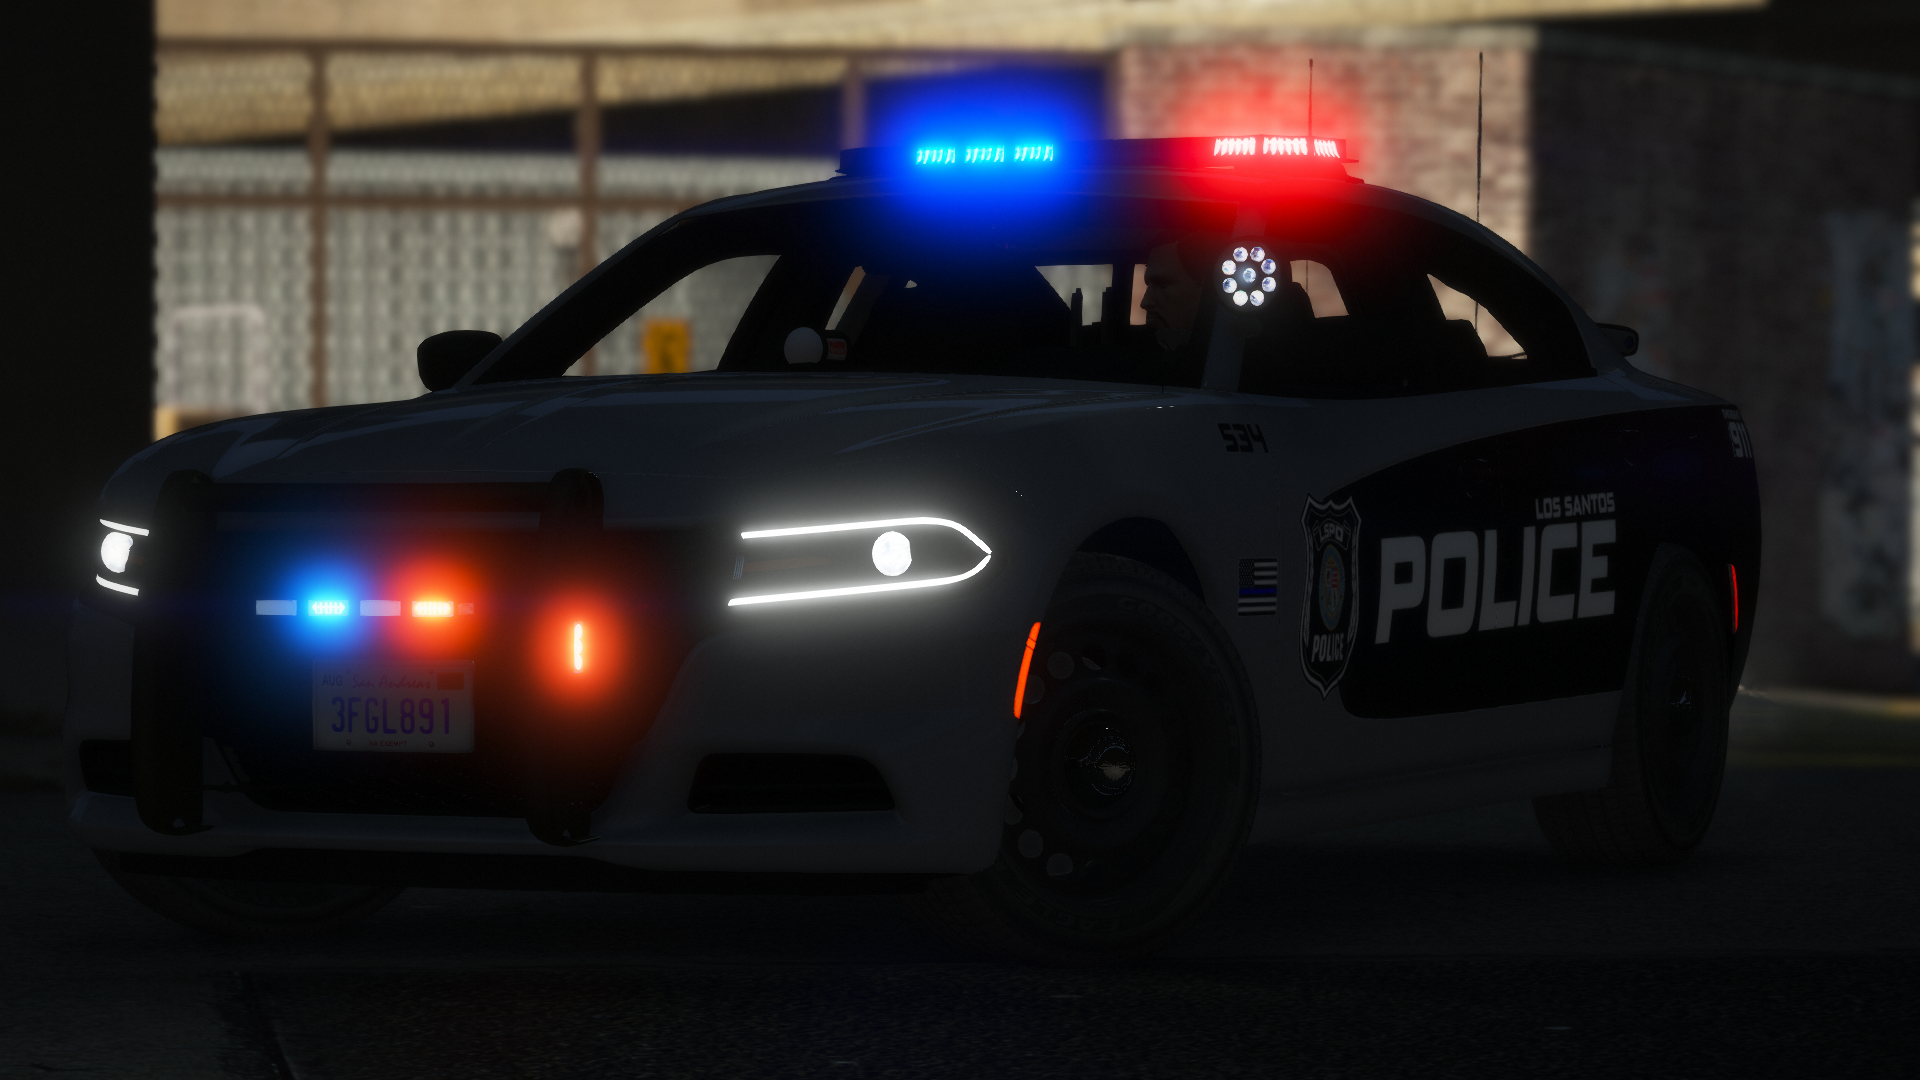 Policia local de Valencia (spanish cop) Ped 1.0 »  - FS19,  FS17, ETS 2 mods